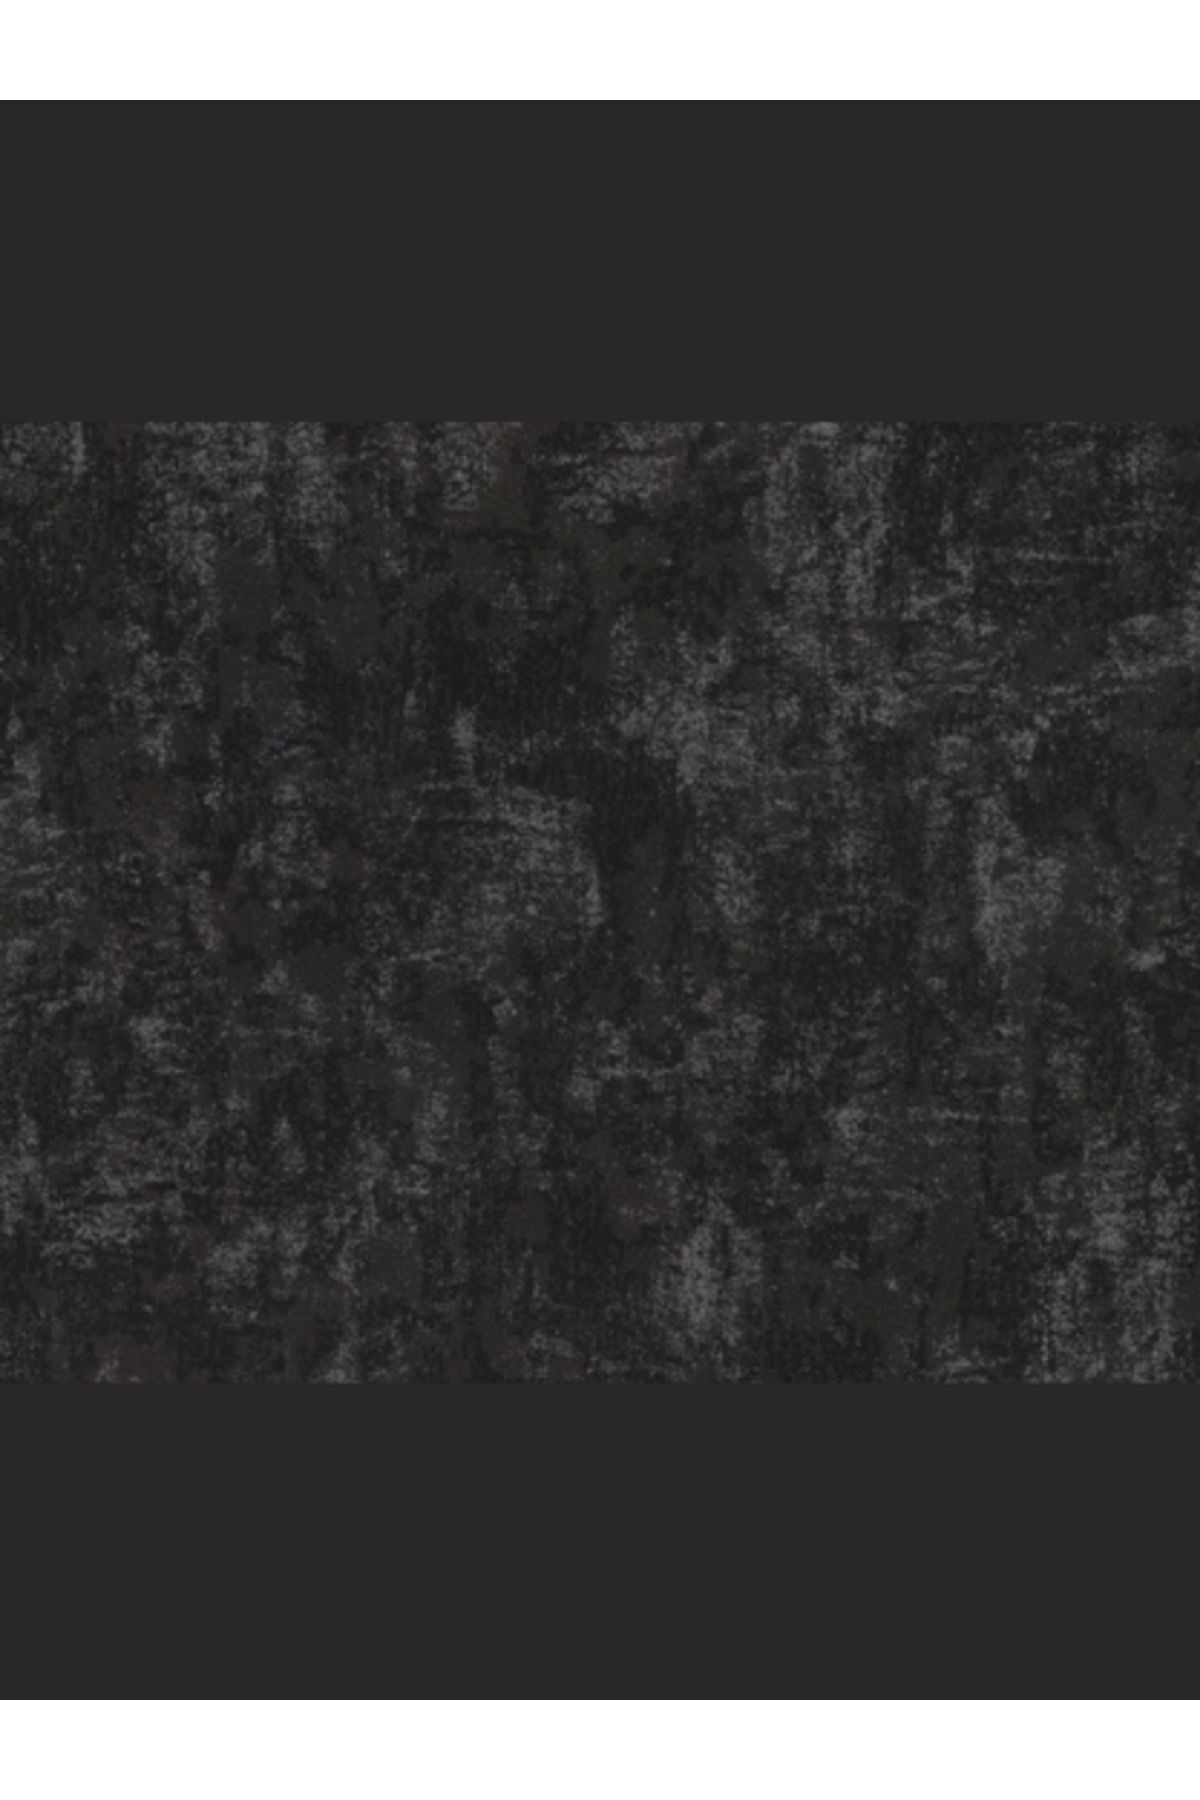 Decowall Siyah Kendinden Desenli Duvar Kağıdı 5003-05 RETRO DK